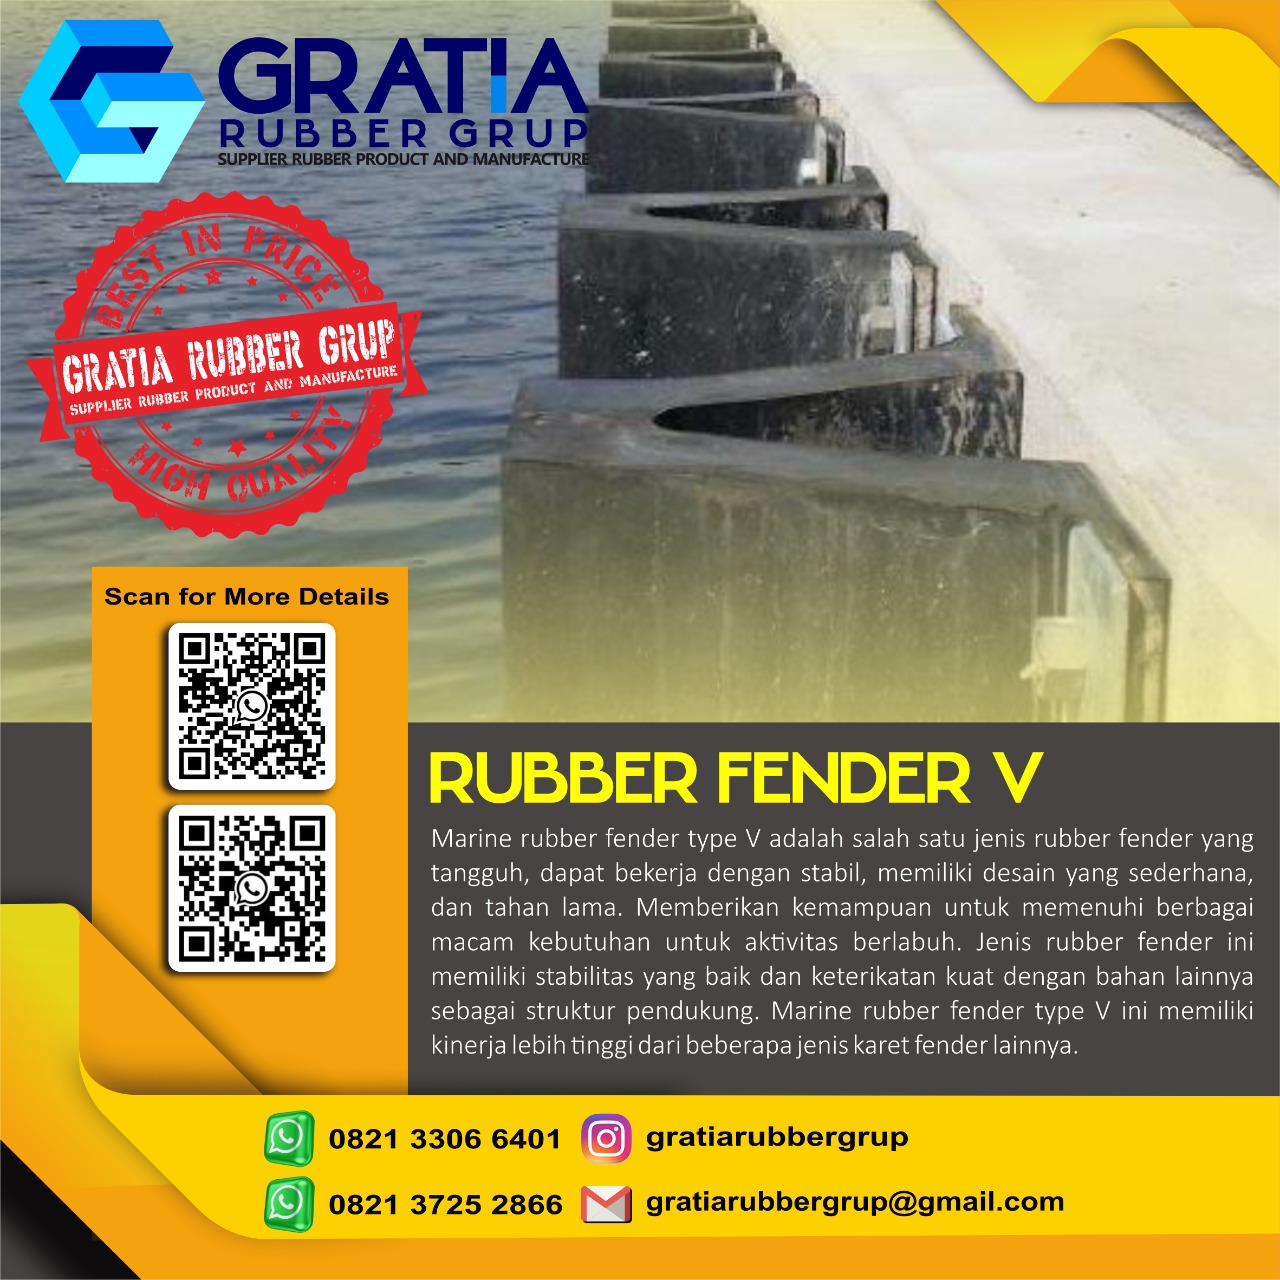 Harga Rubber Bumper Boat Berkualitas  Melayani Pengiriman Ke Pagar Alam Sumatera Selatan Hub 0821 3306 0461